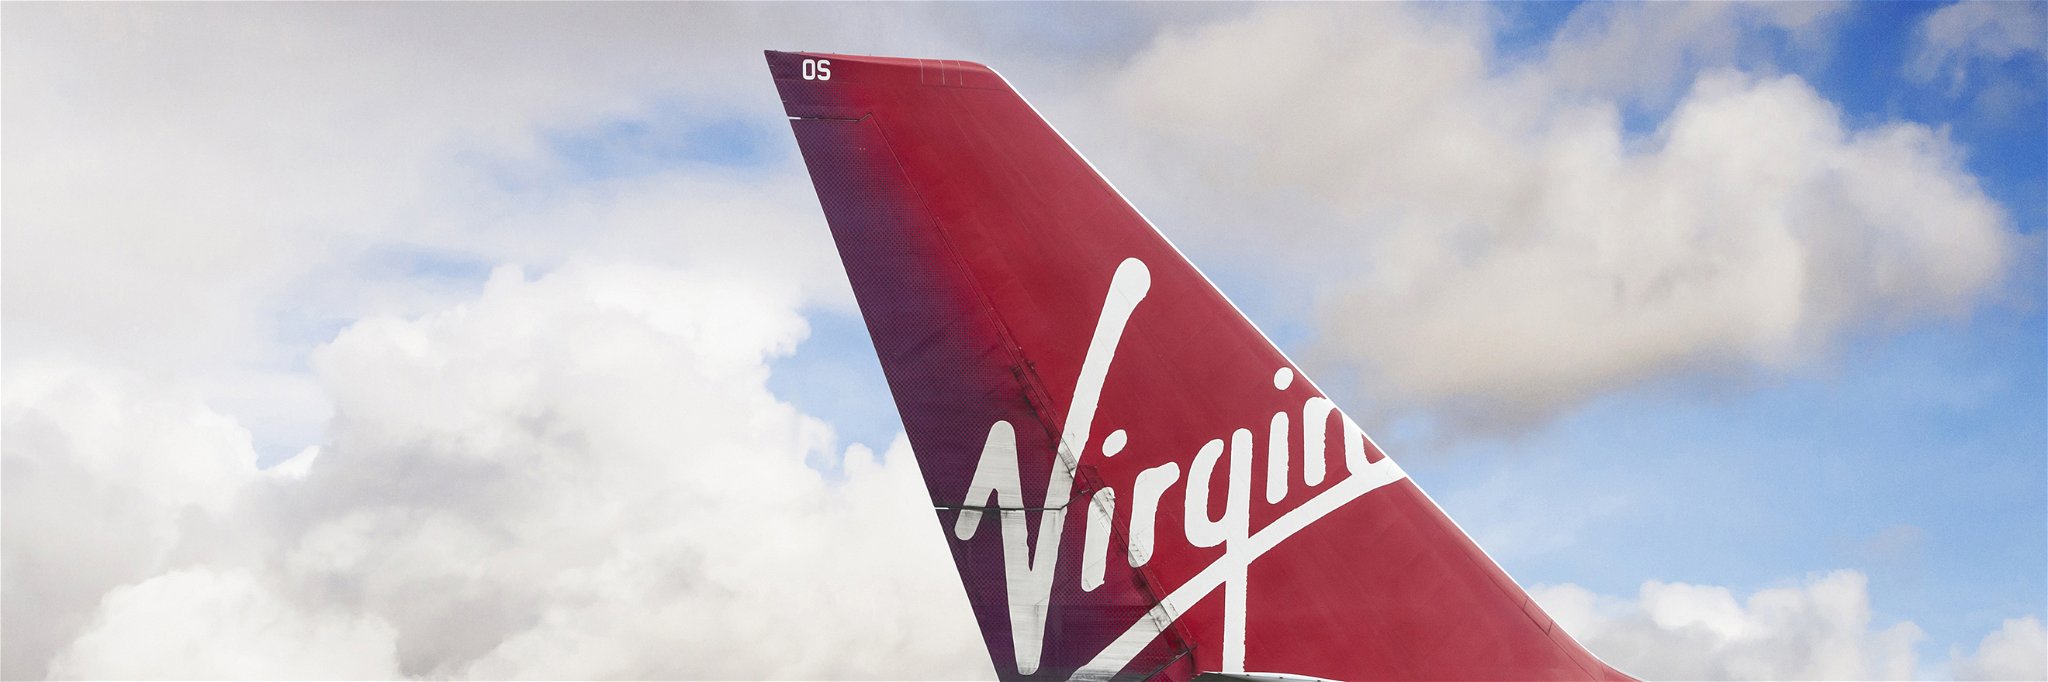 Virgin Atlantic will serve festive menus December 24-26.